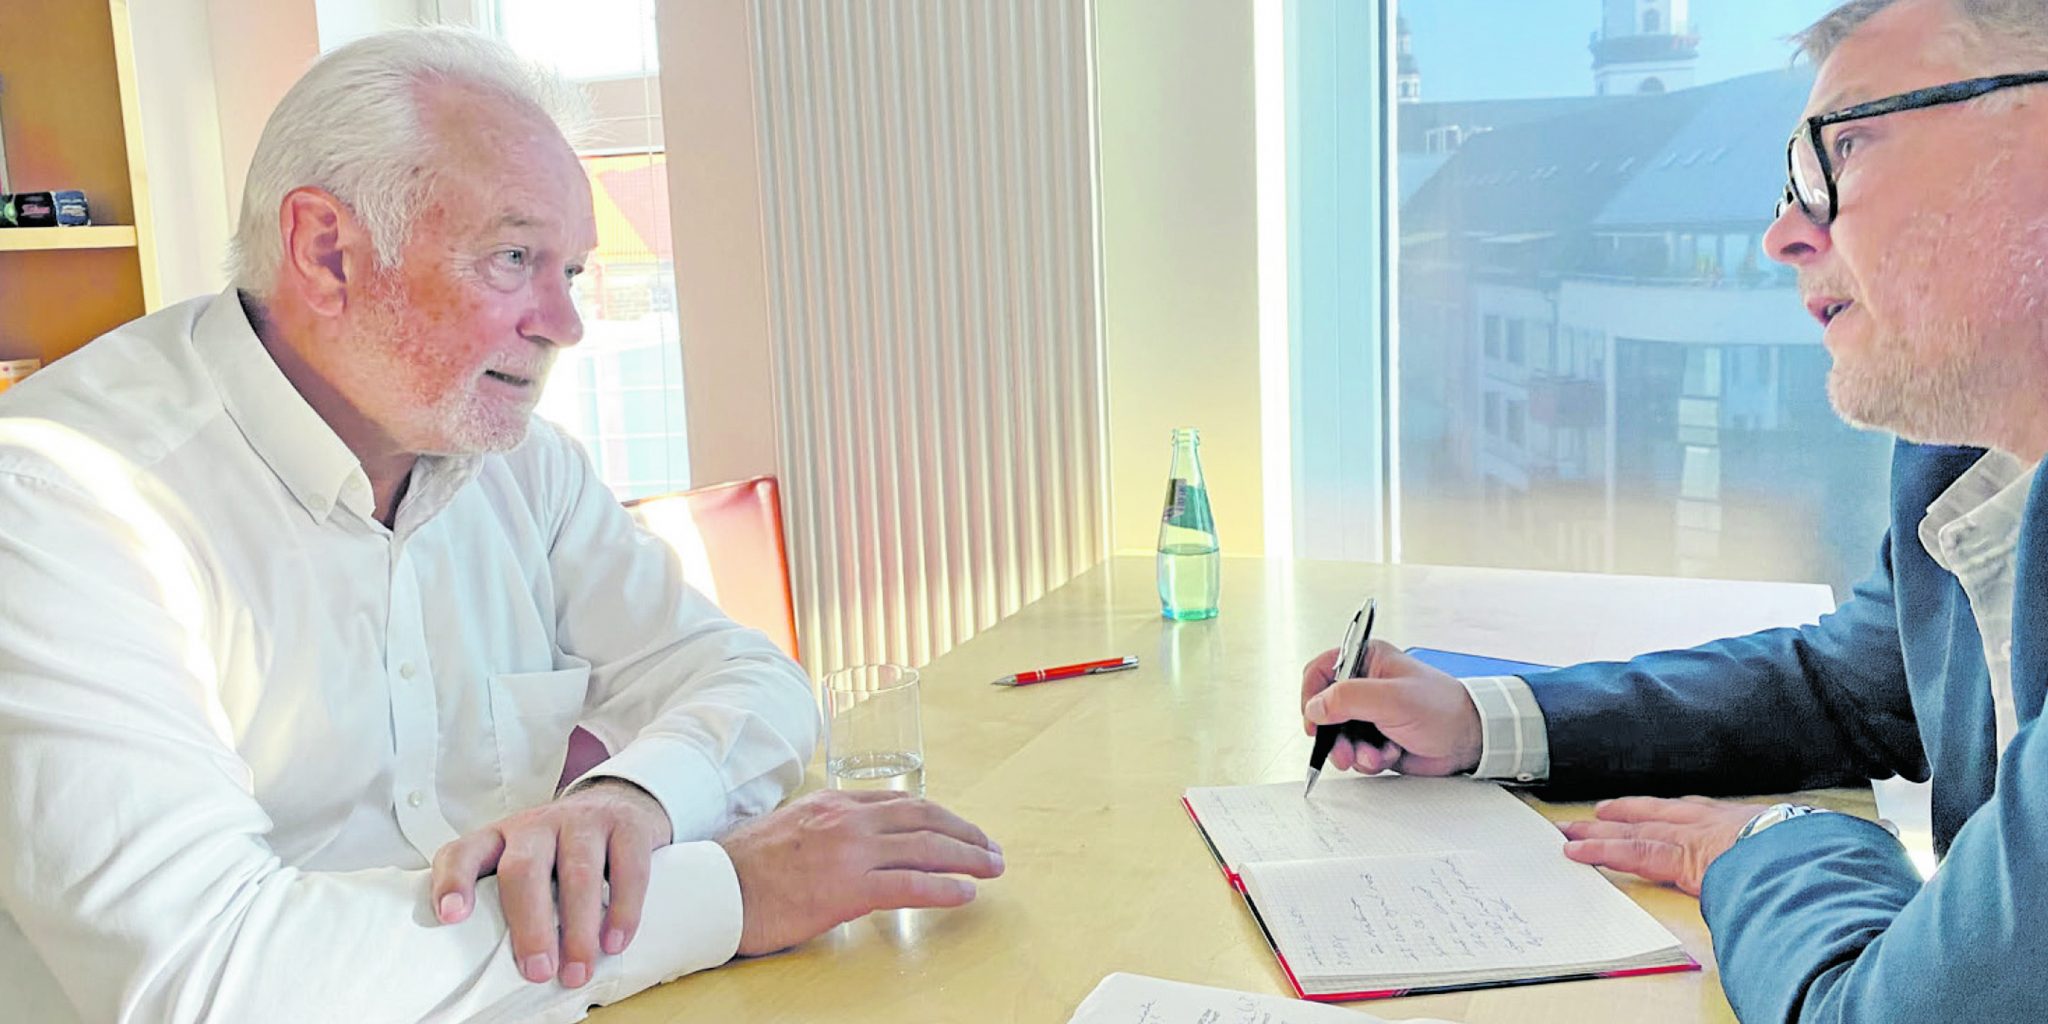 2020 sprach Wolfgang Kubicki in Chemnitz mit Chefredakteur Sven Günther. Foto: FDP